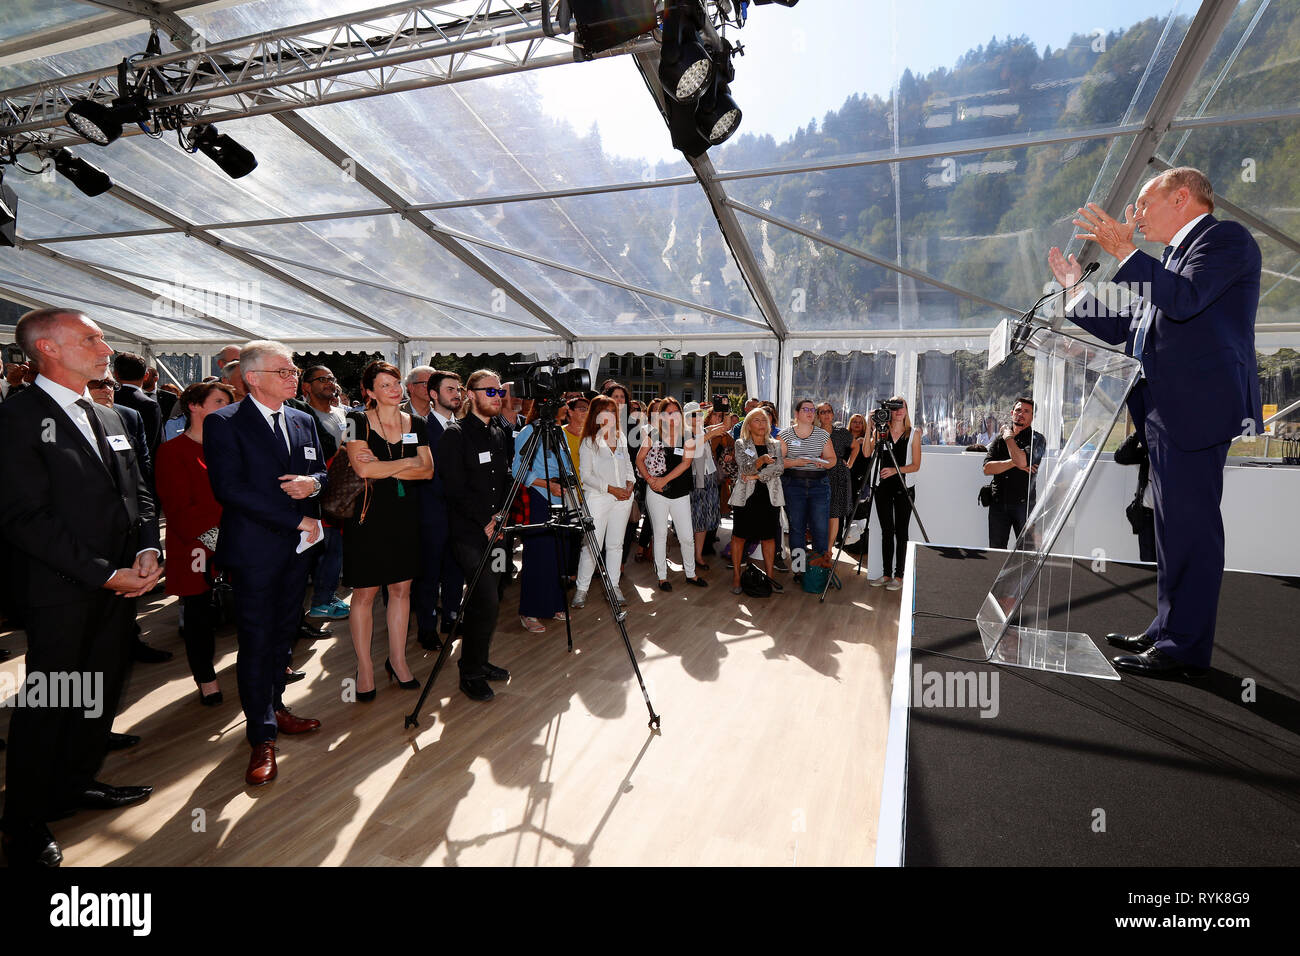 Saint-Gervais Mont-Blanc Thermal Spa. L'Oreal des Vorsitzenden und CEO Jean-Paul Agon. 0 ffnung Preisverleihung am 29. September 2018. Frankreich. Stockfoto